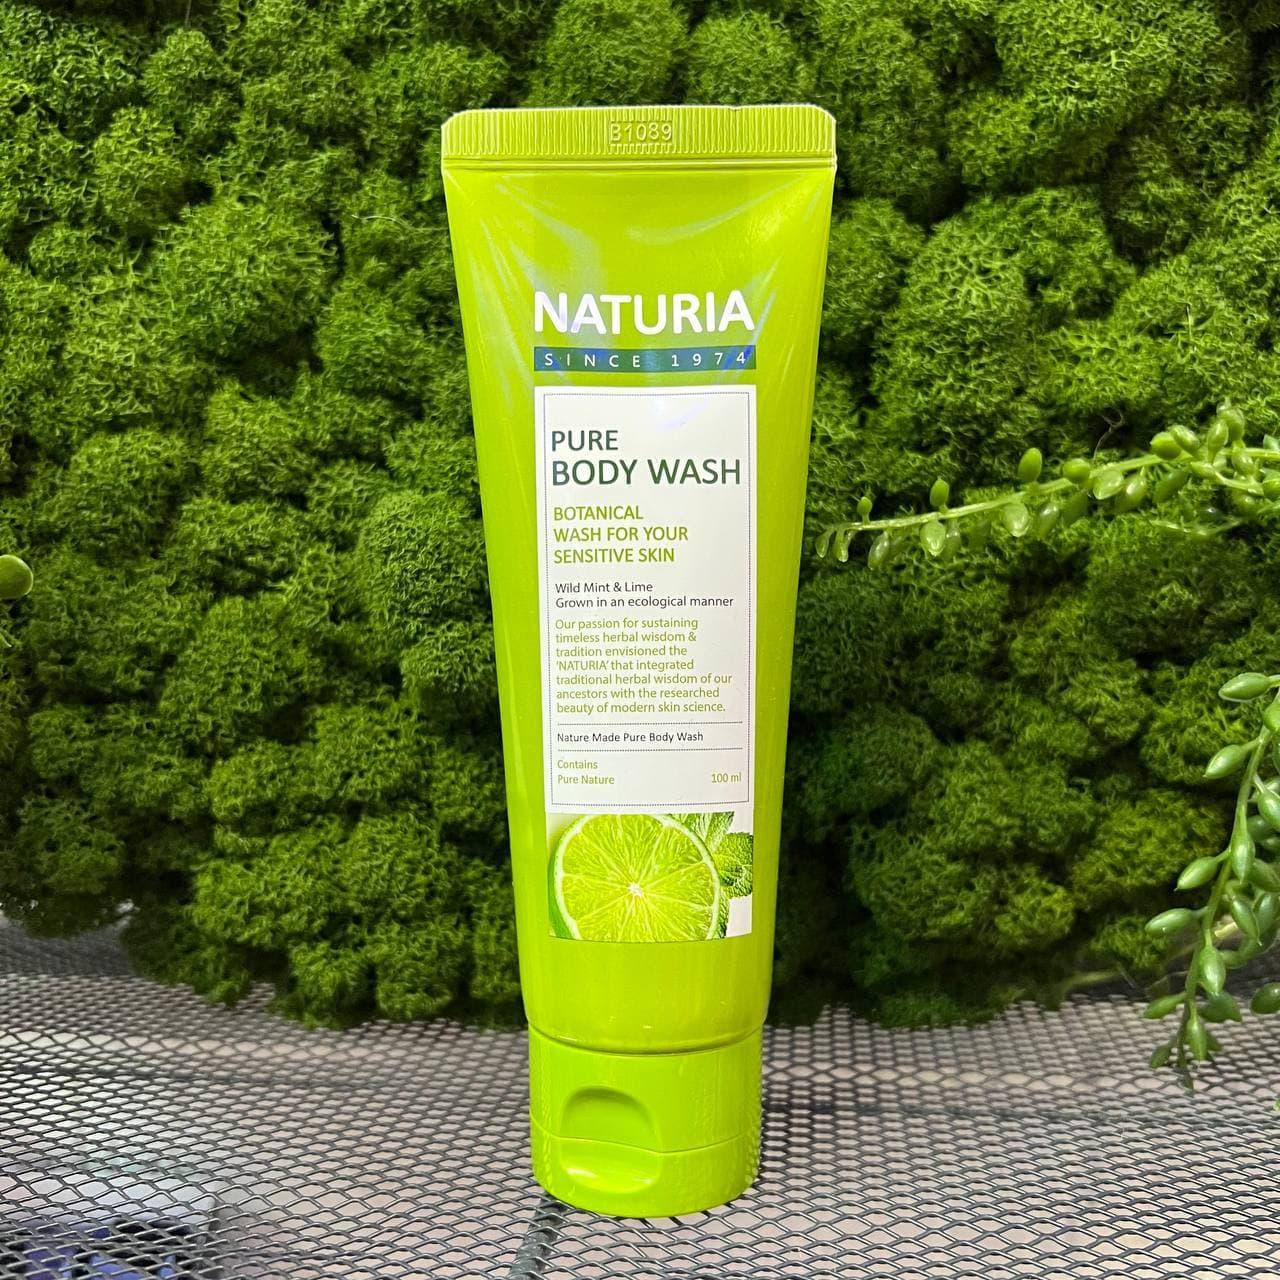 Гель для душа на основе натуральных экстрактов EVAS Naturia Pure Body Wash Wild Mint & Lime , 100мл